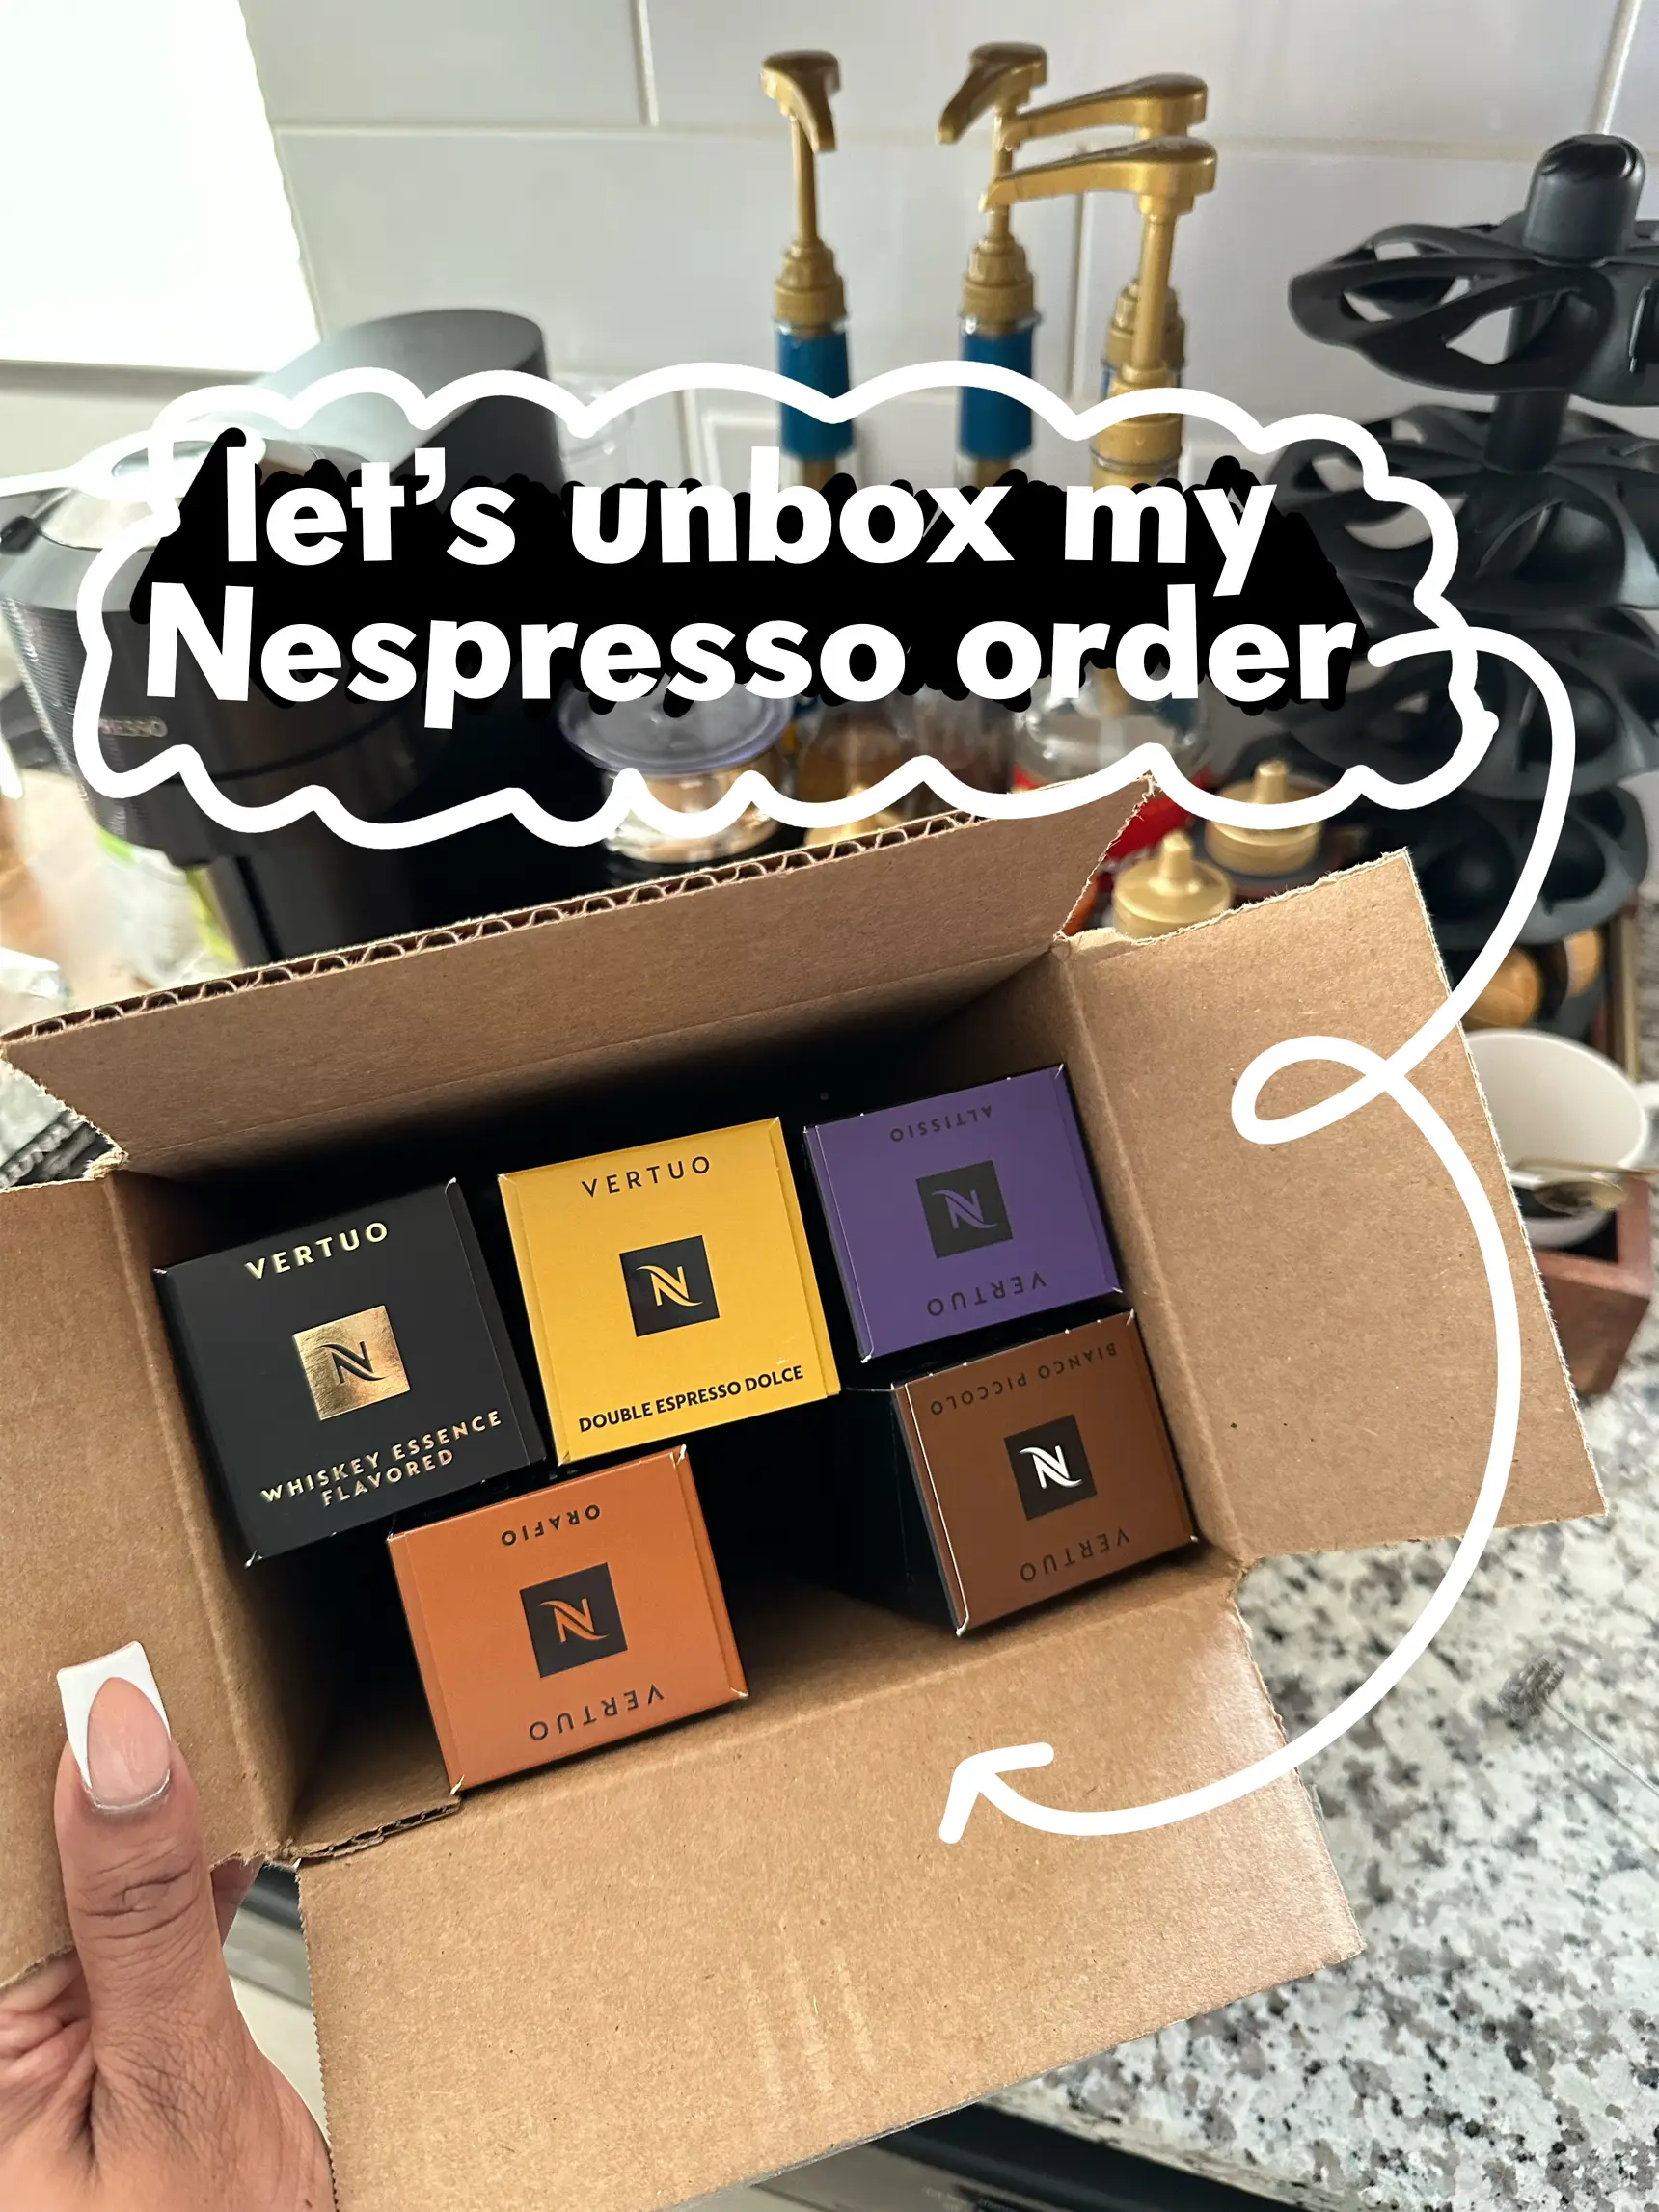 Orafio Coffee Pods, Espresso